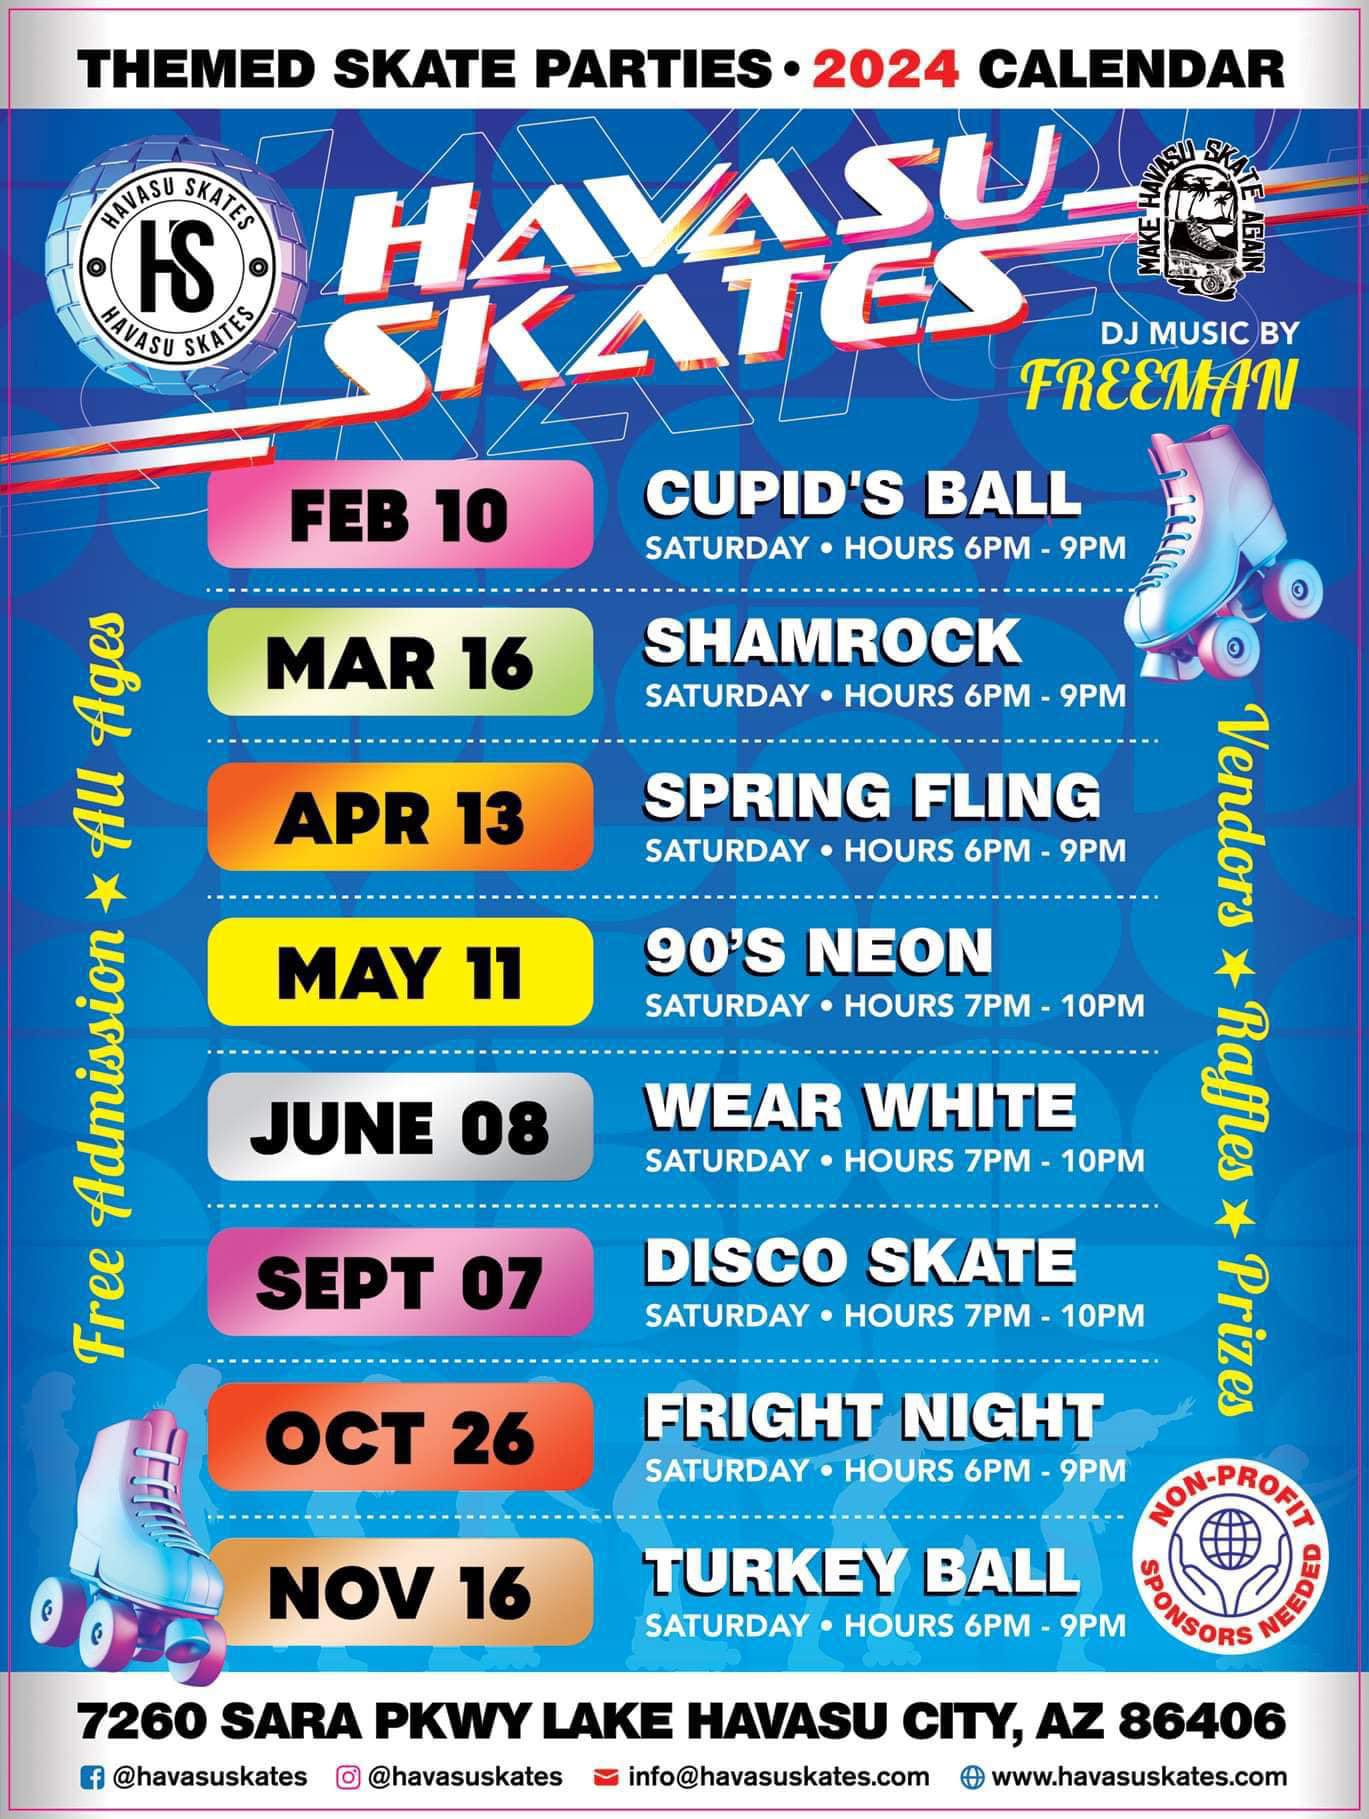 Havasu Skates Shamrock Themed Night